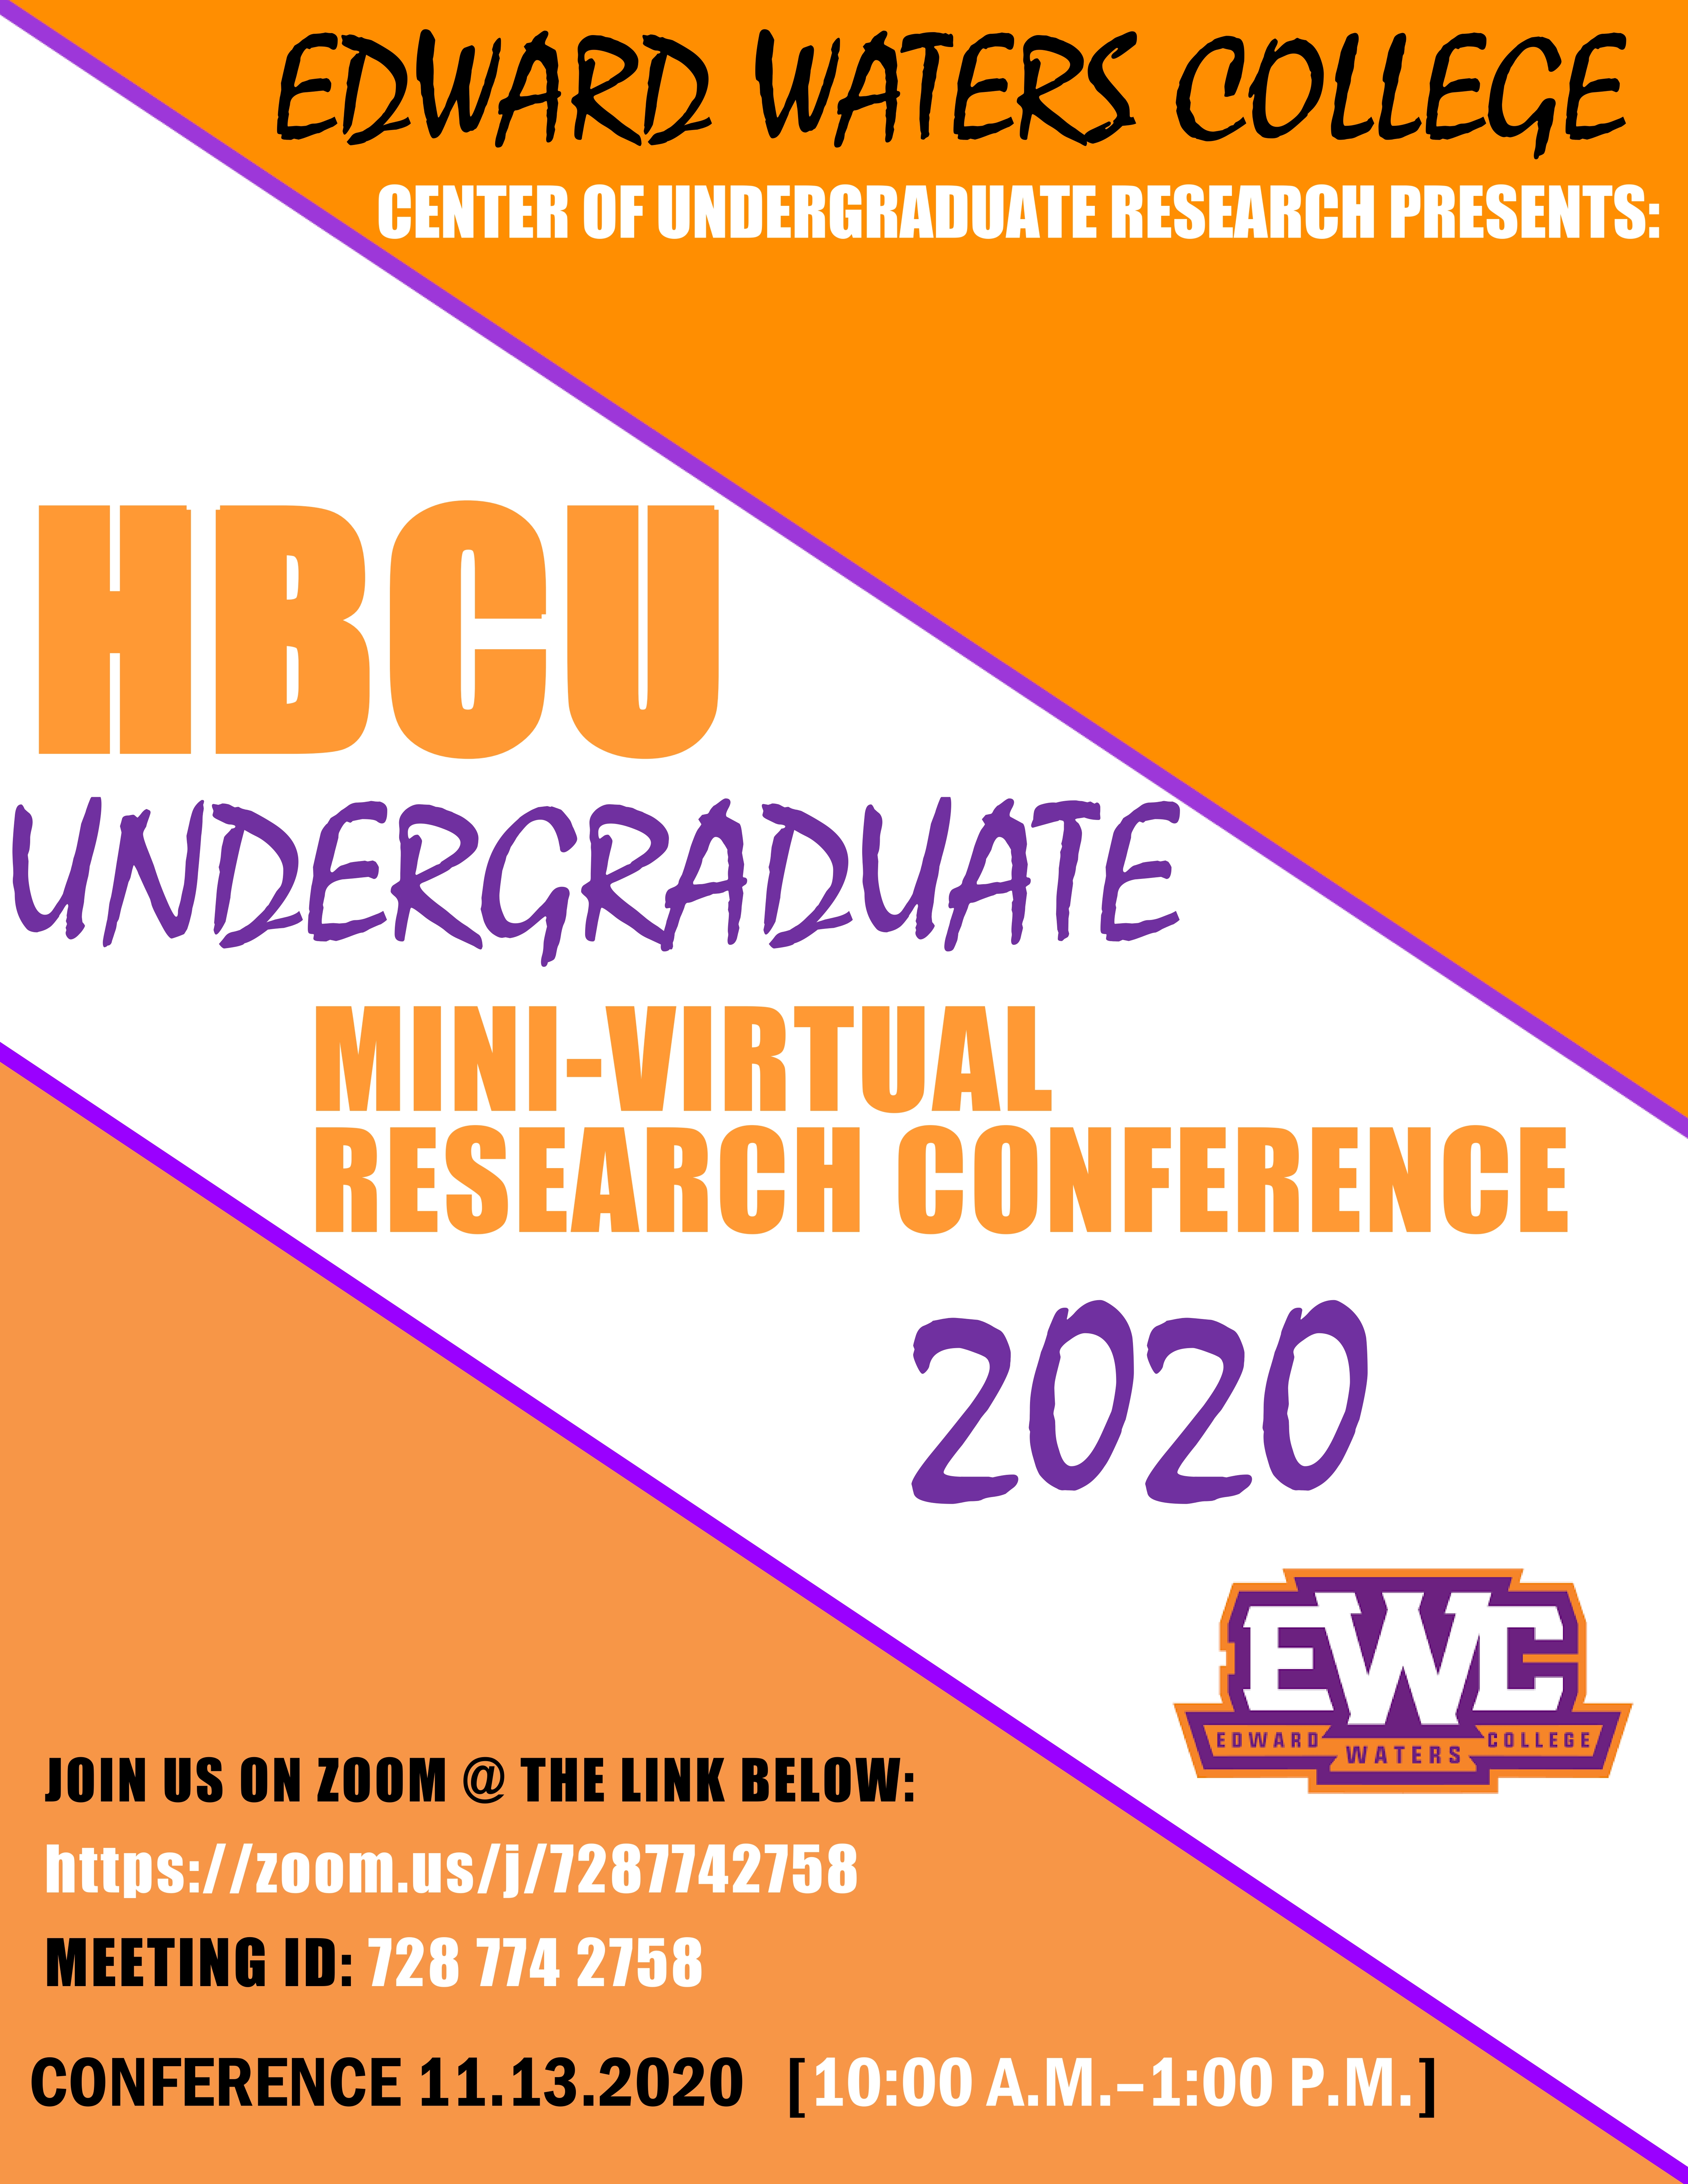 HBCU undergraduate mini-virtual research conference 2020